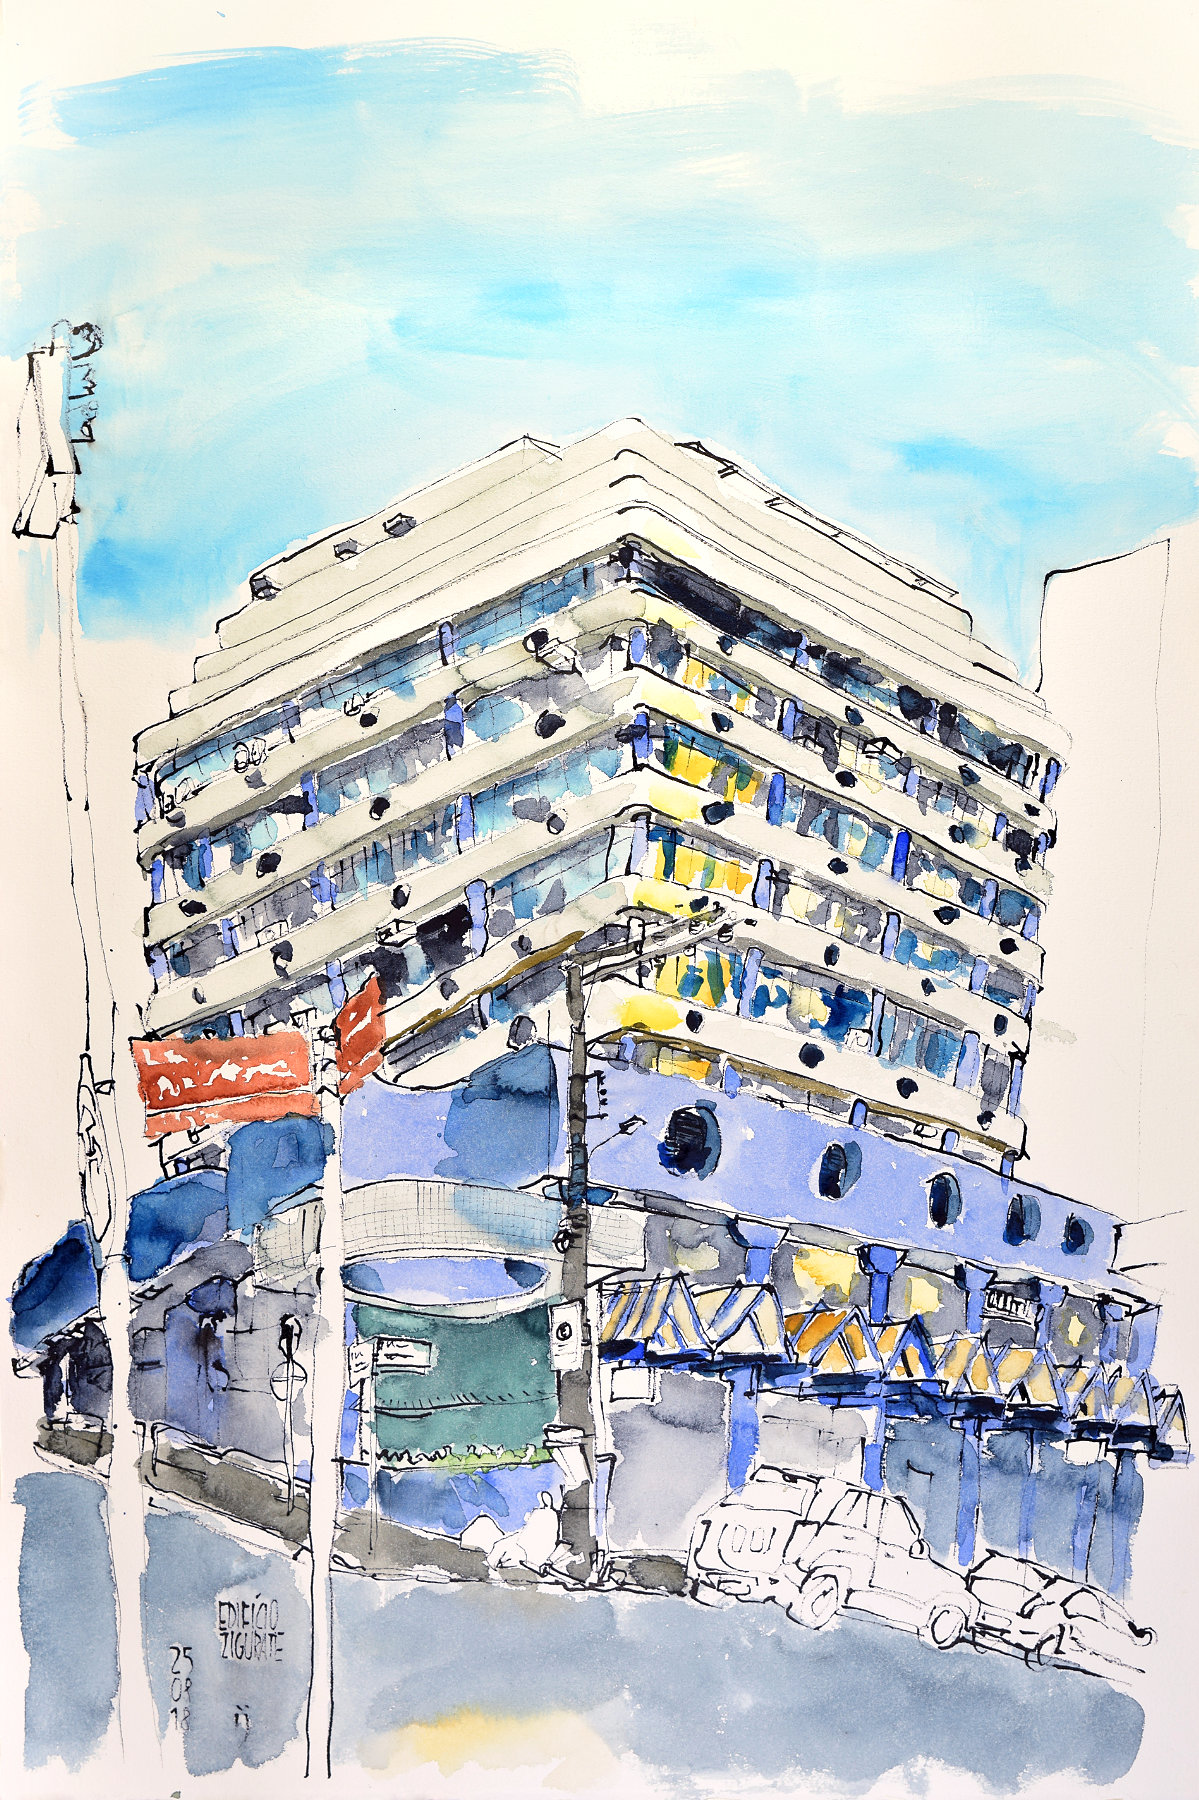 Desenho a traço colorido com aquarela do edifício Zigurate, em uma esquina, com volumes horizontais nas duas fachadas